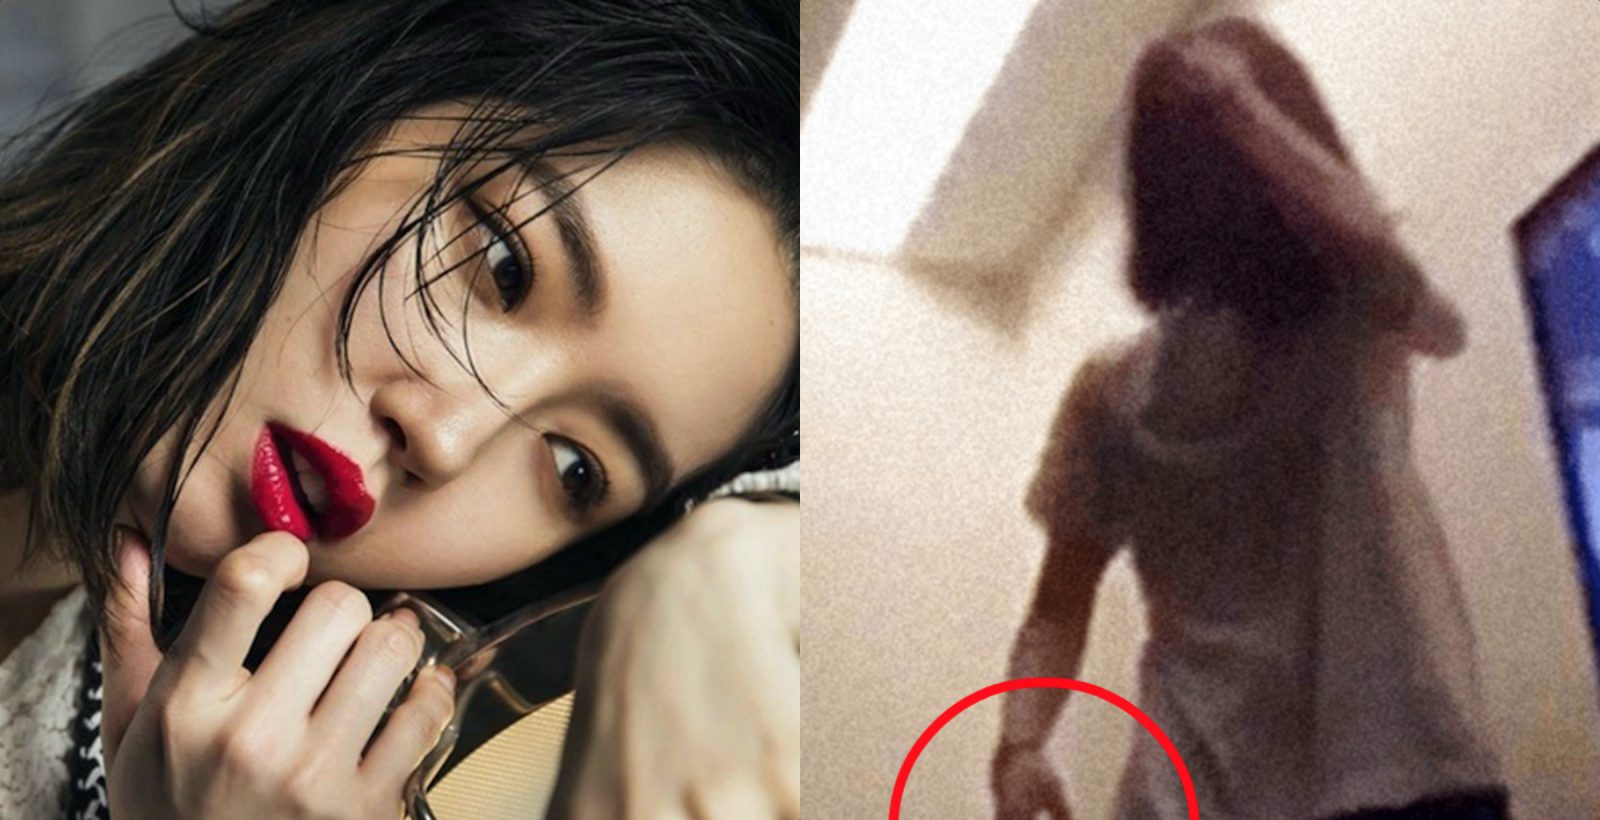 В сети появилось видео на котором актриса Ким Сэ Ром избивает своего мужа